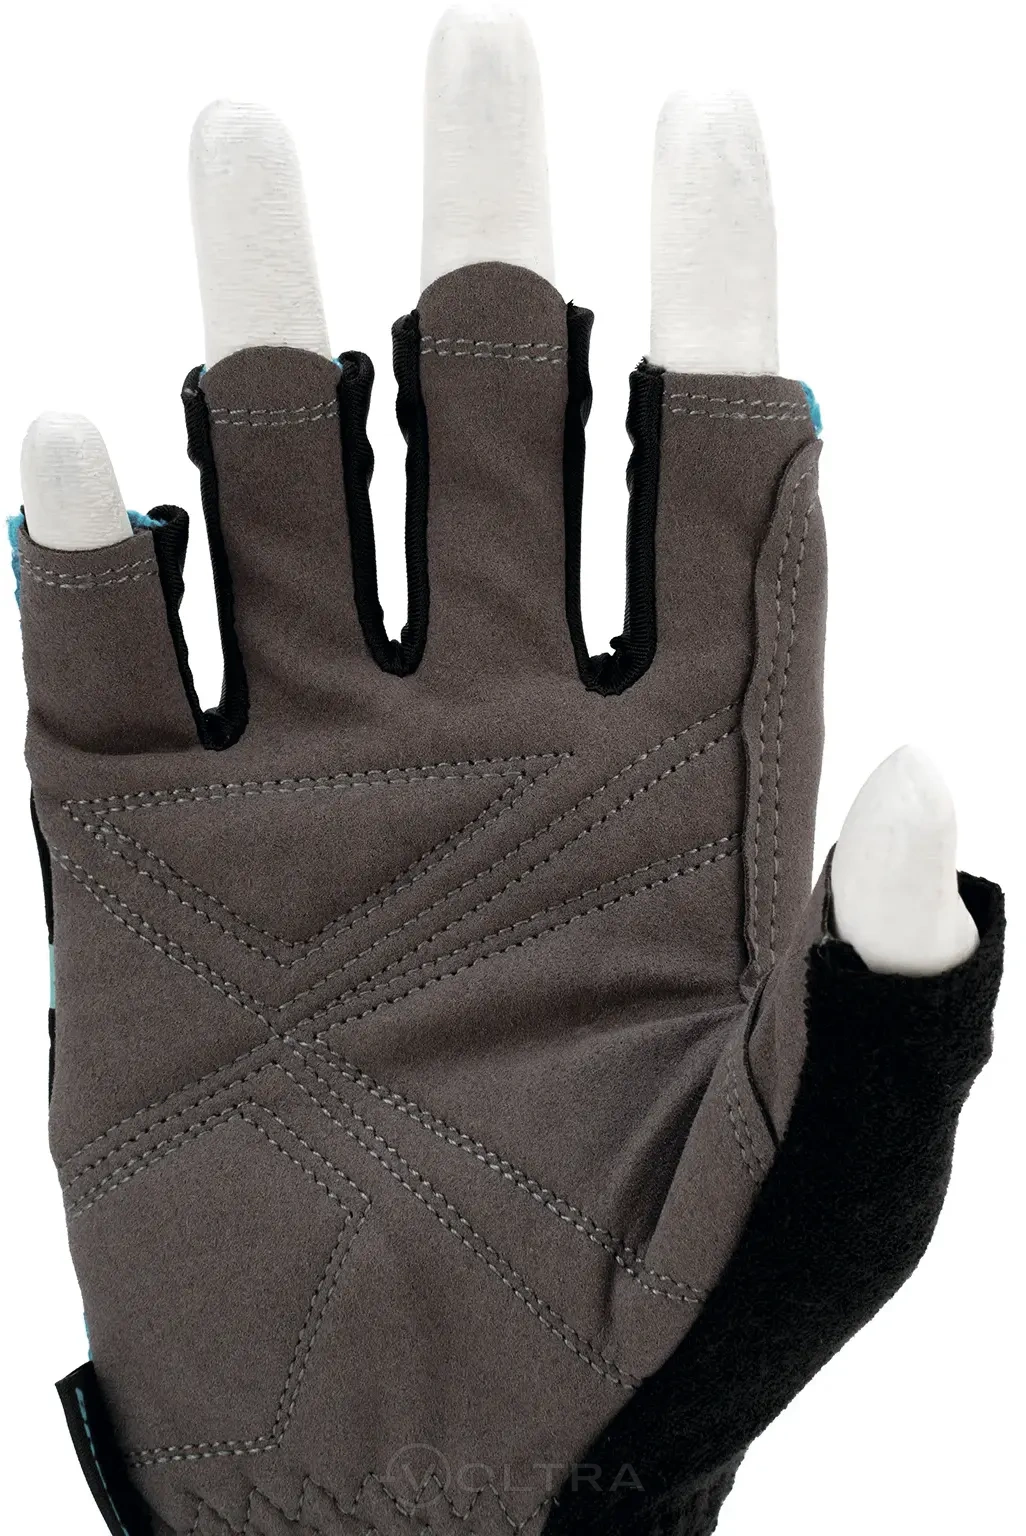 Перчатки комбинированные облегченные открытые пальцы AKTIV размер L (9) Gross (90309)